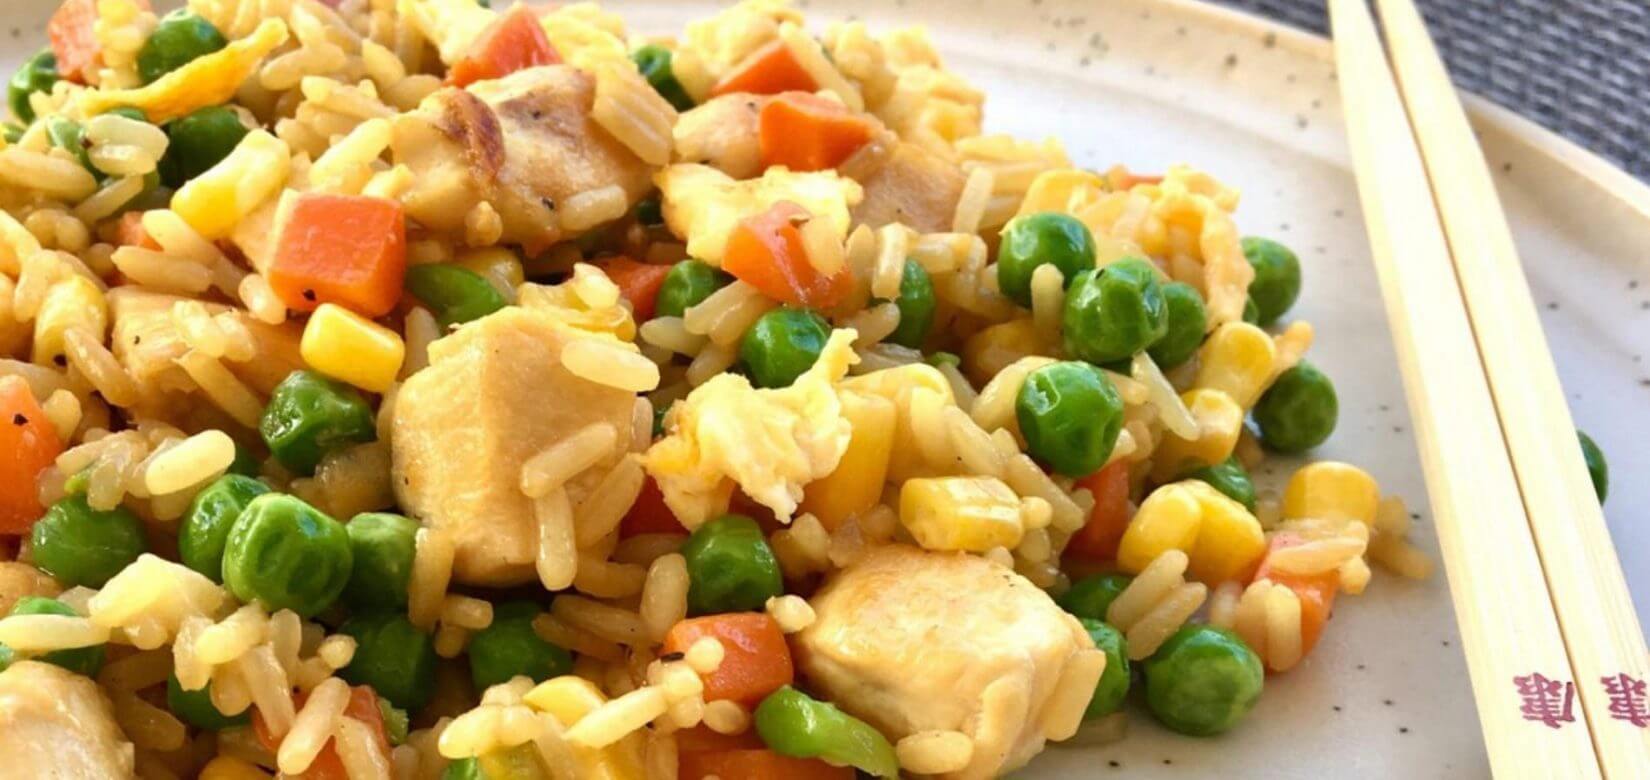 Κινέζικο ρύζι με κοτόπουλο: κάντε αυτή την νόστιμη παραλλαγή που θα αγαπήσουν τα παιδιά σας!